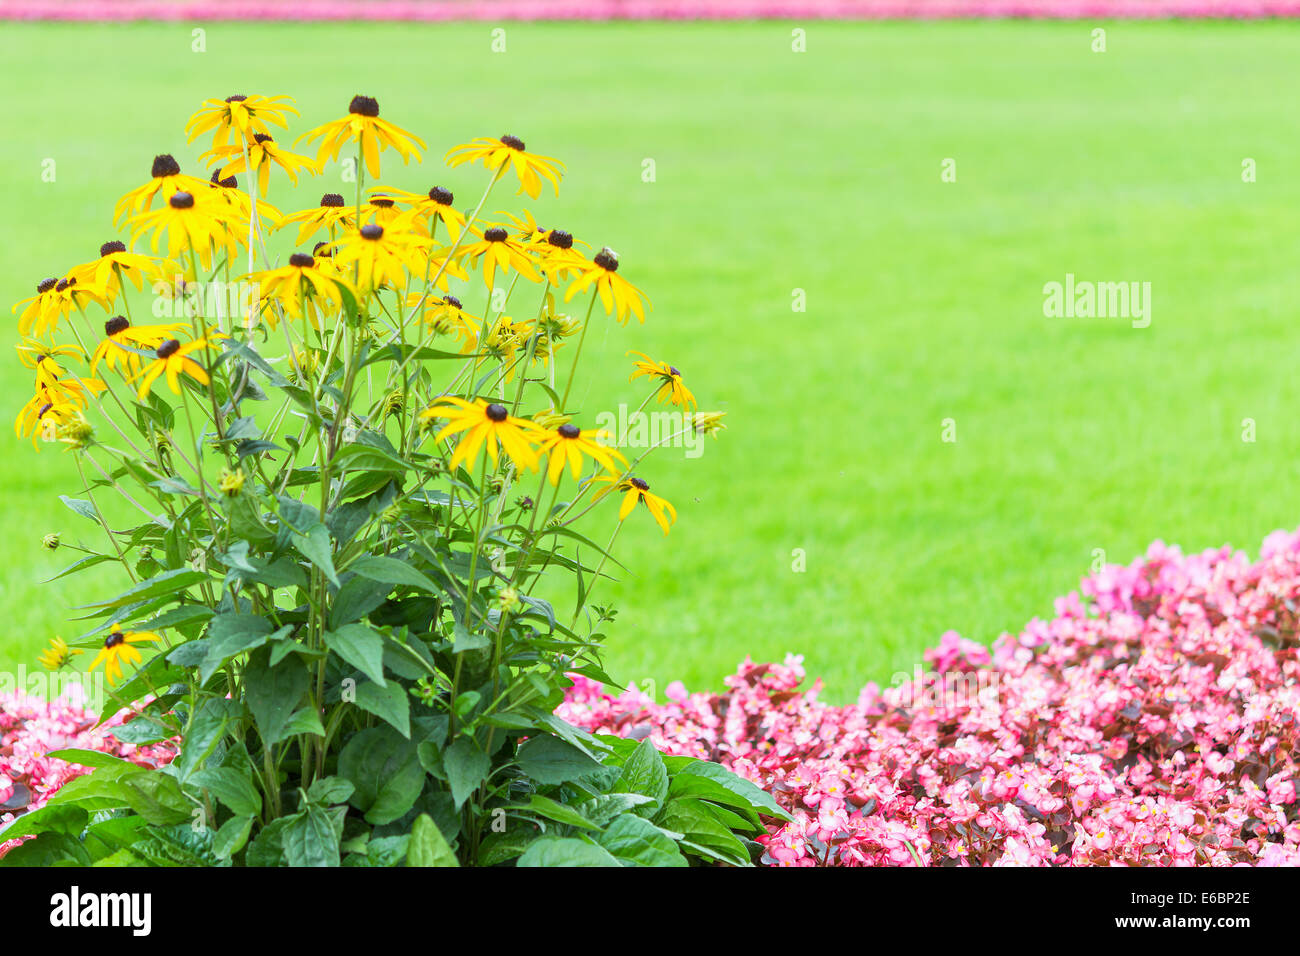 Blumenrahmen Hintergrund mit gelben und rosa Gartenblumen gegen verschwommene grüne frische Rasen mit kostenlosen textfreiraum statt text Stockfoto